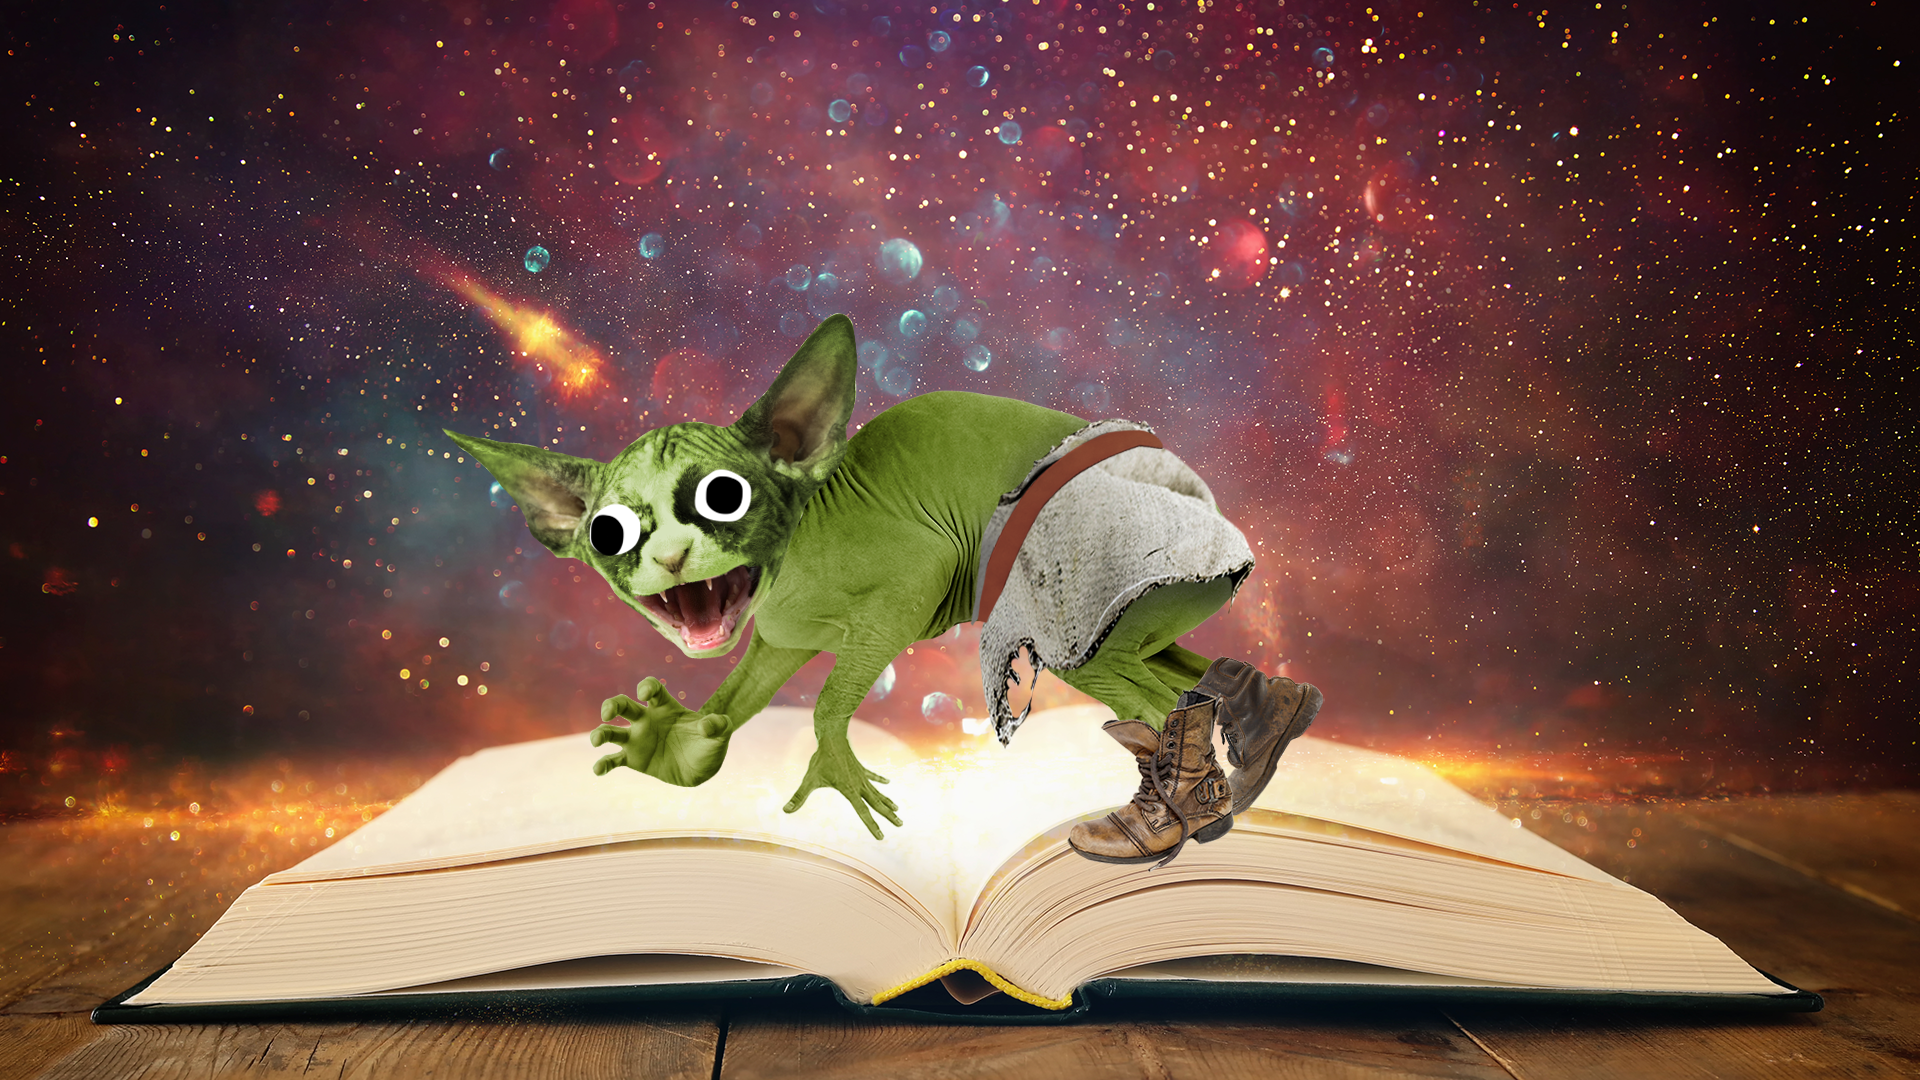 A Shrek like goblin on a fairytale book